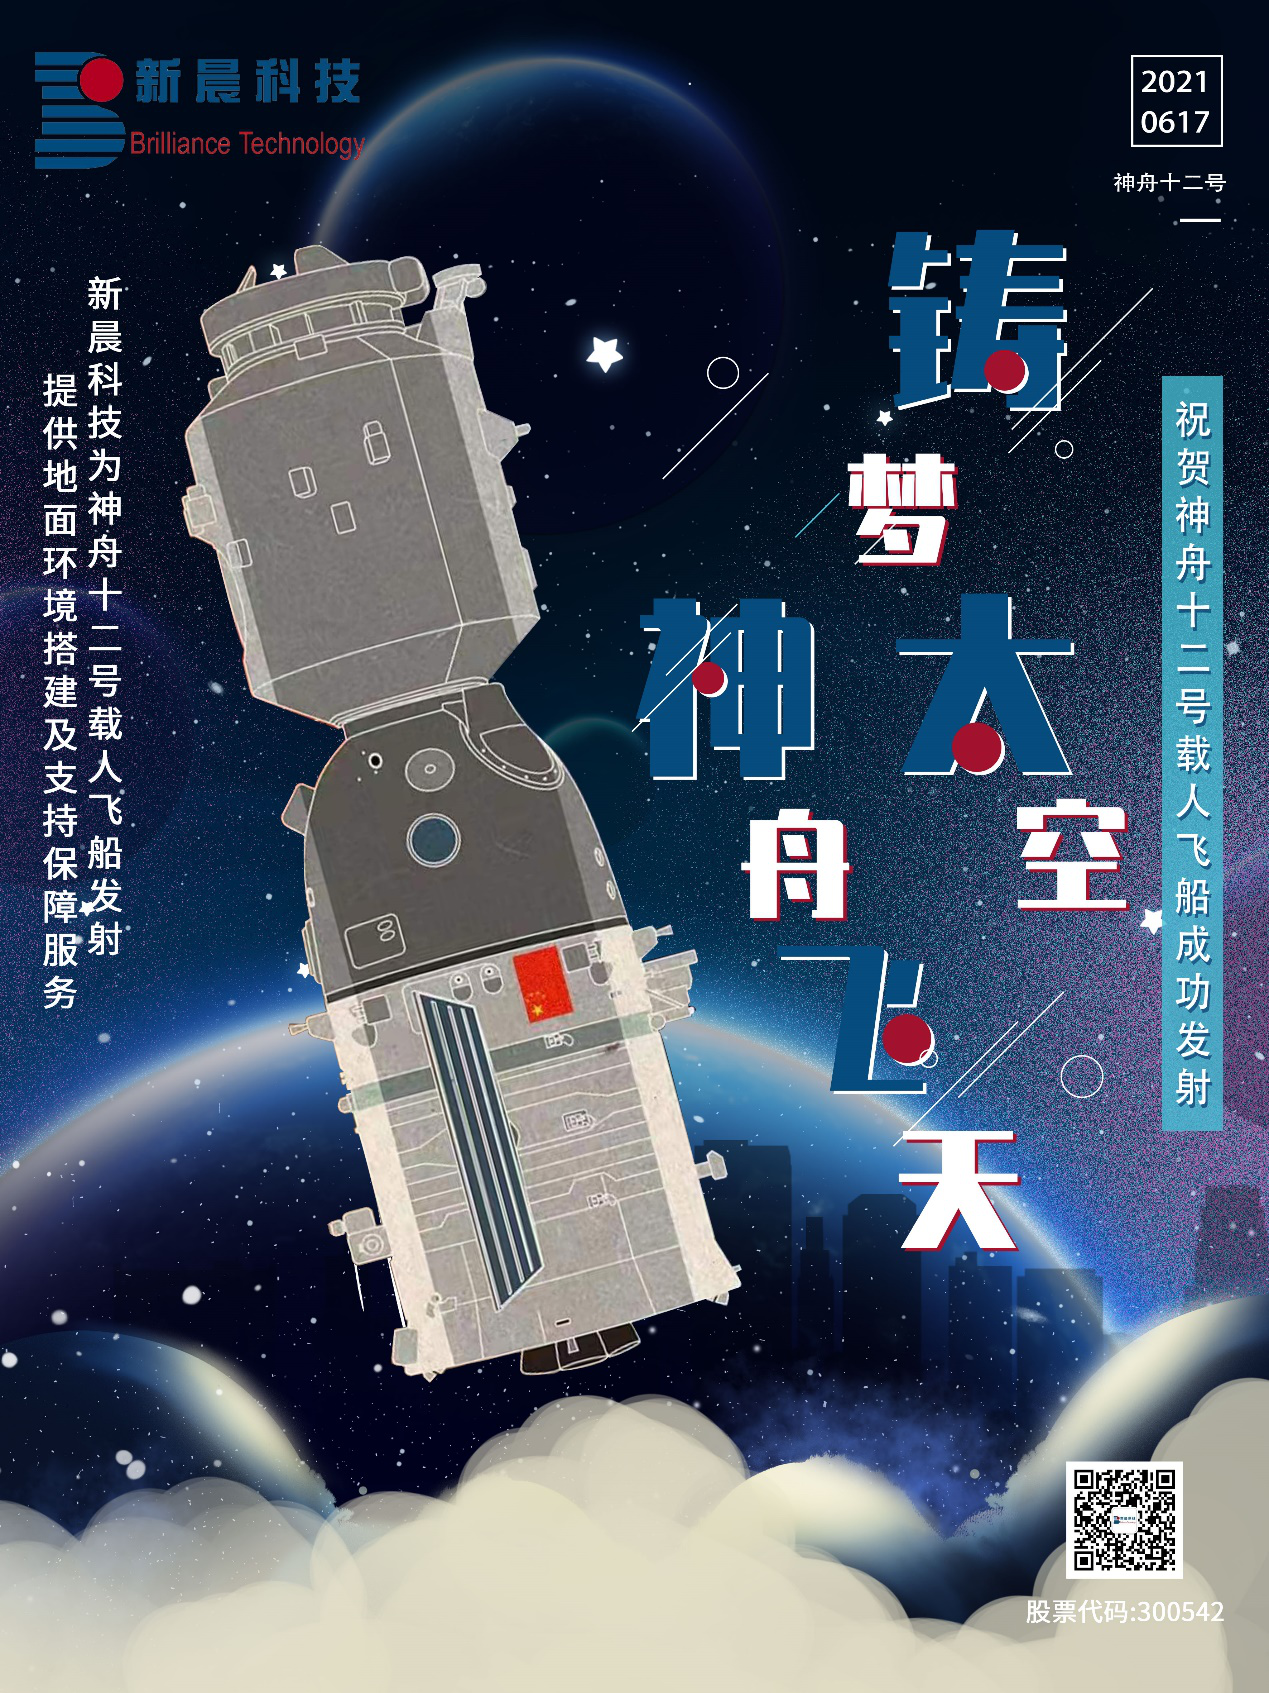 助力中国航天 米乐娱乐为神舟十二号载人飞船成功发射保驾护航(图1)